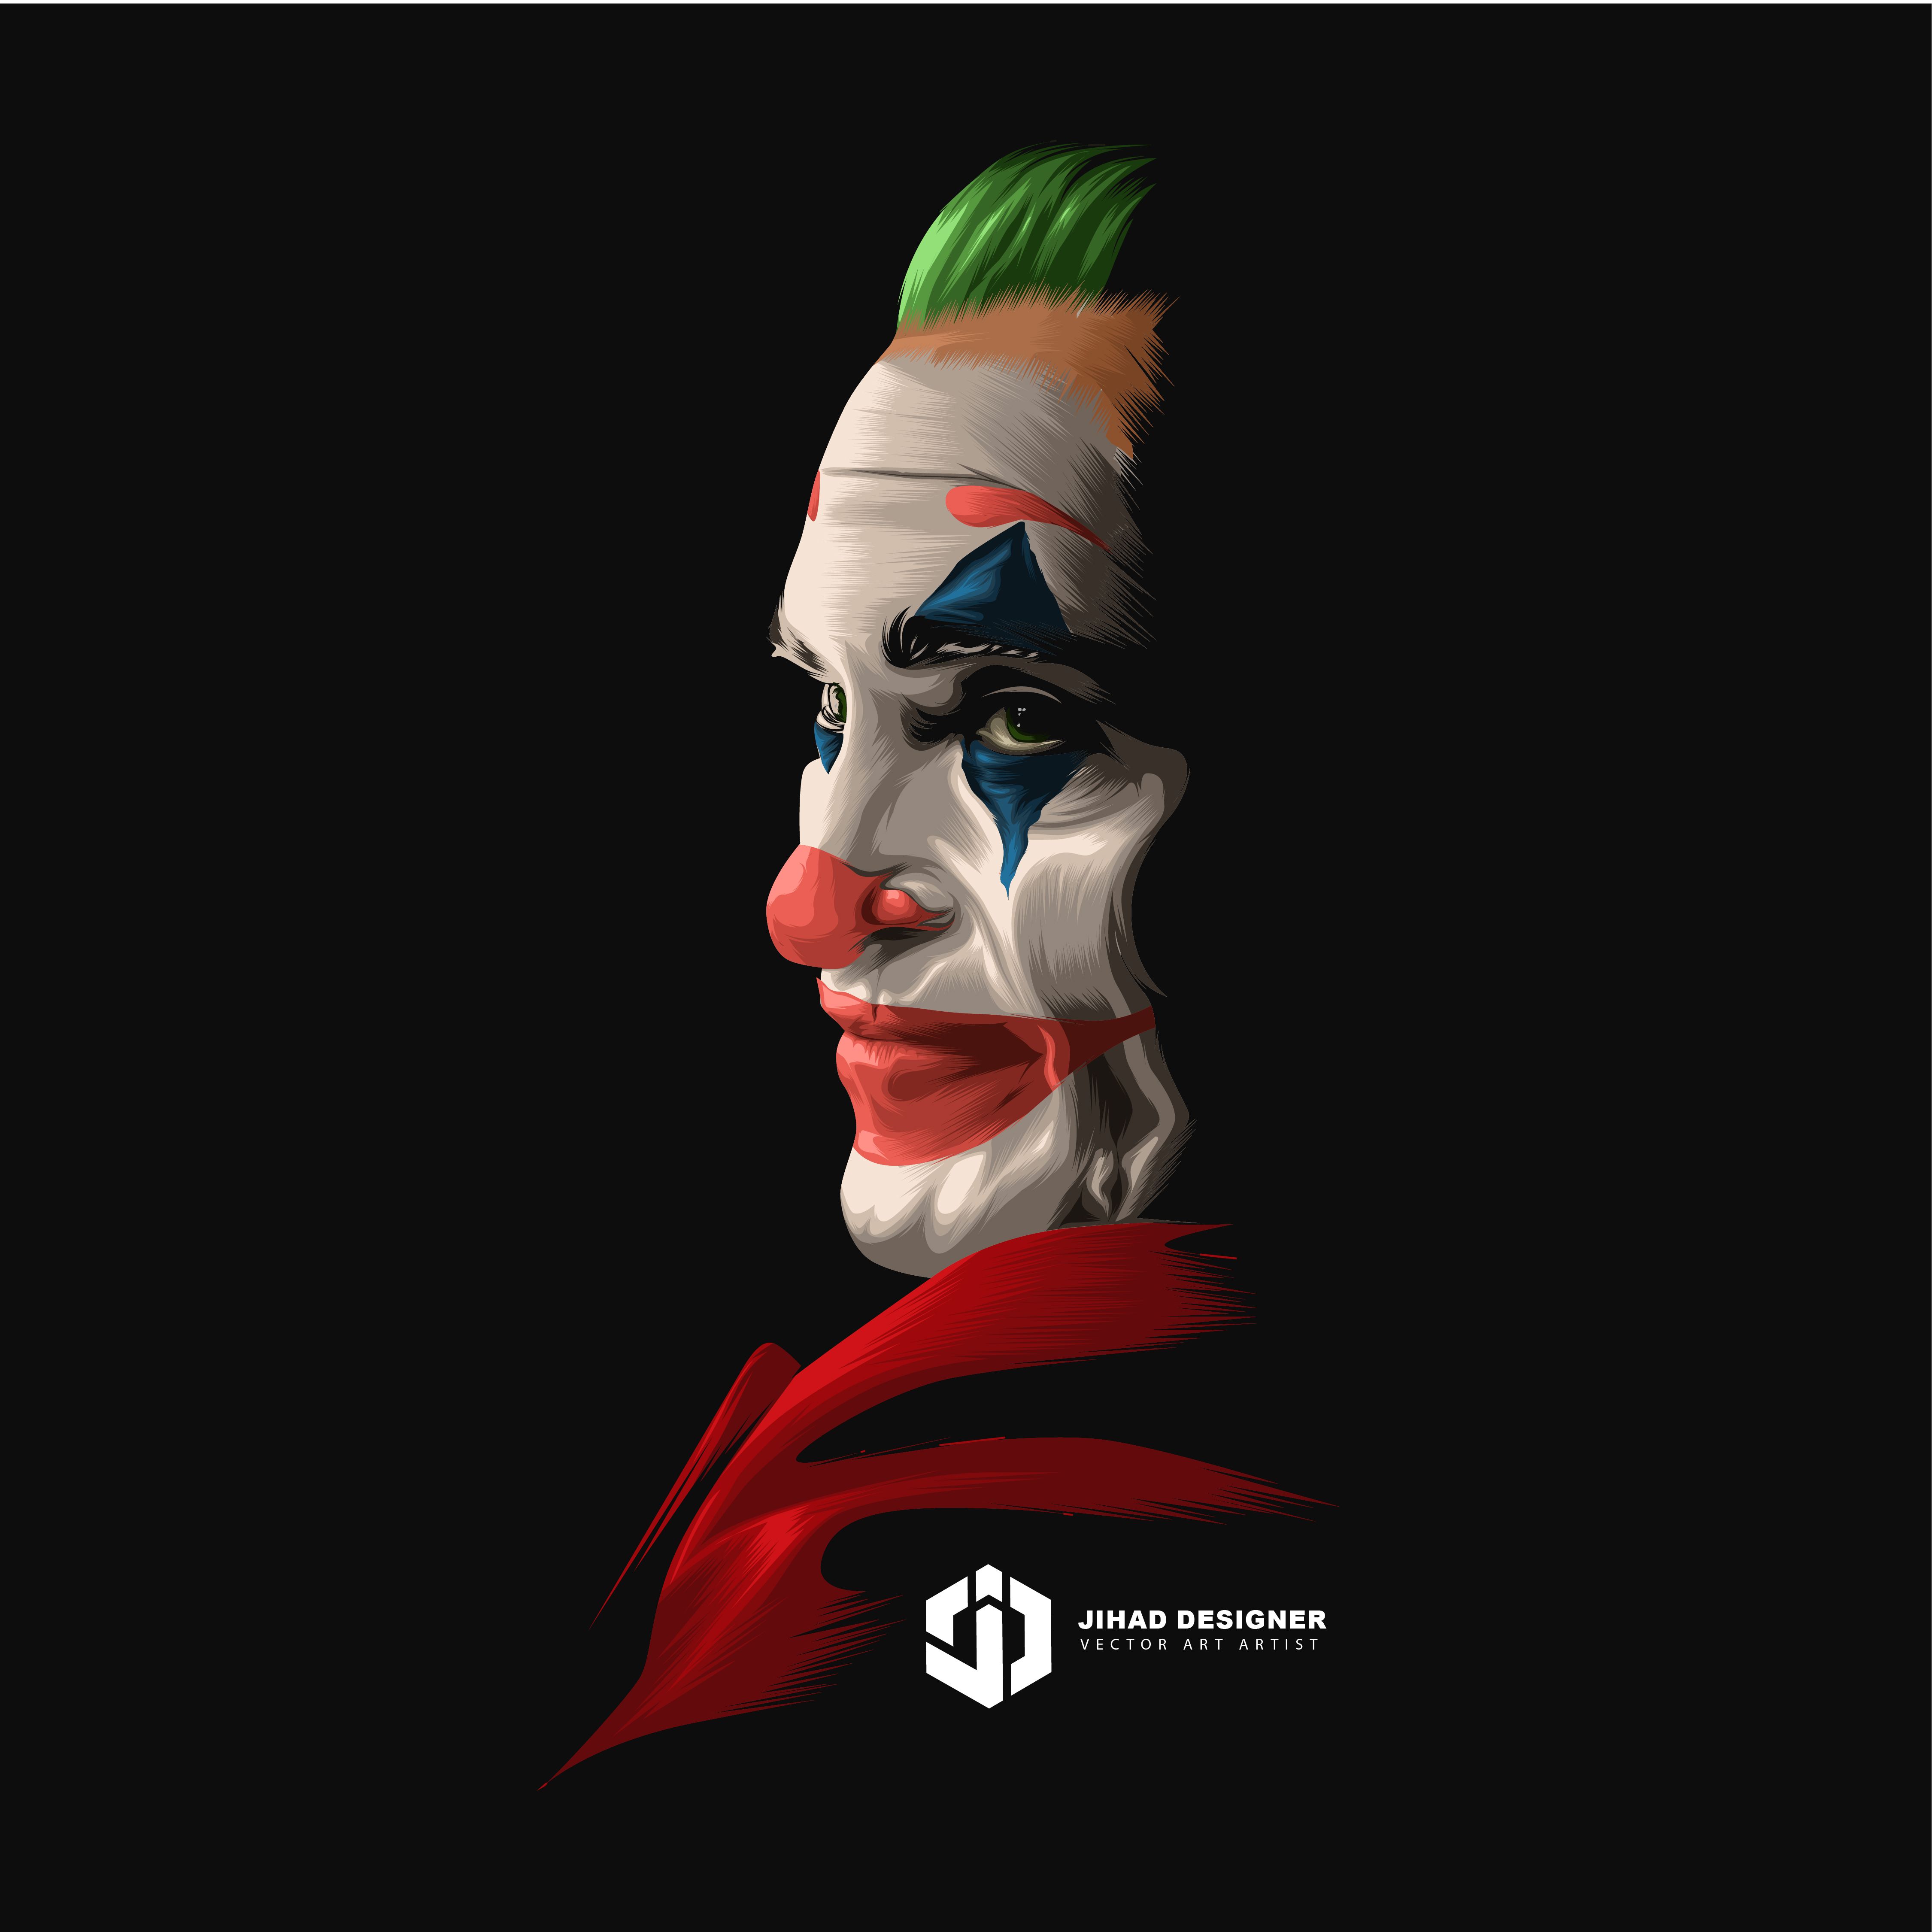 Joker vector art (awesome artwork)